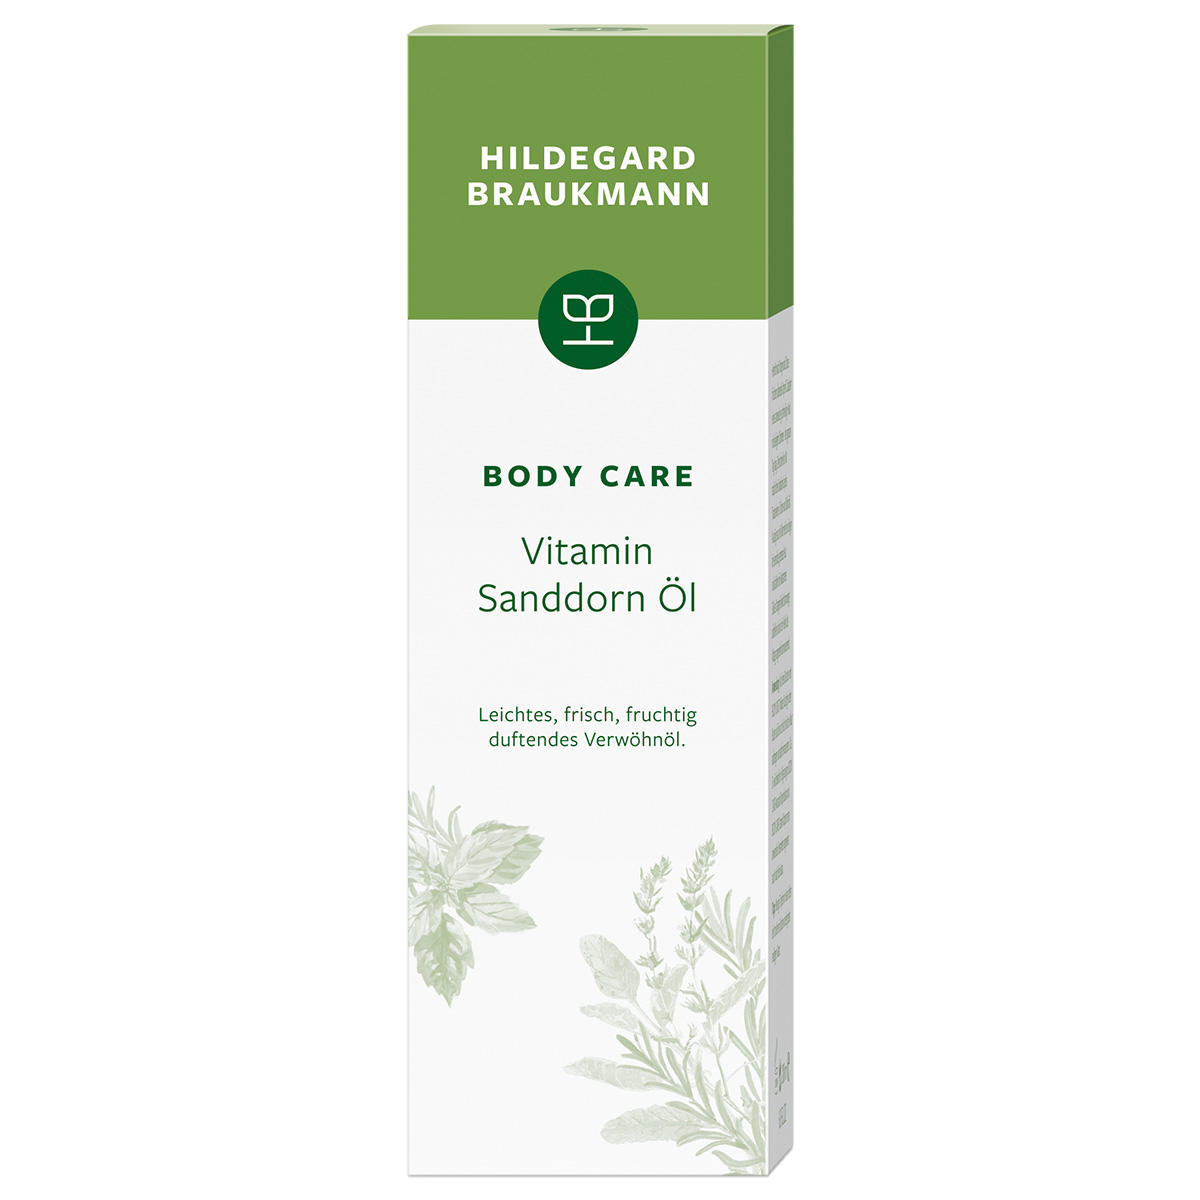 Hildegard Braukmann BODY CARE Vitamin sea buckthorn oil 200 ml - 2